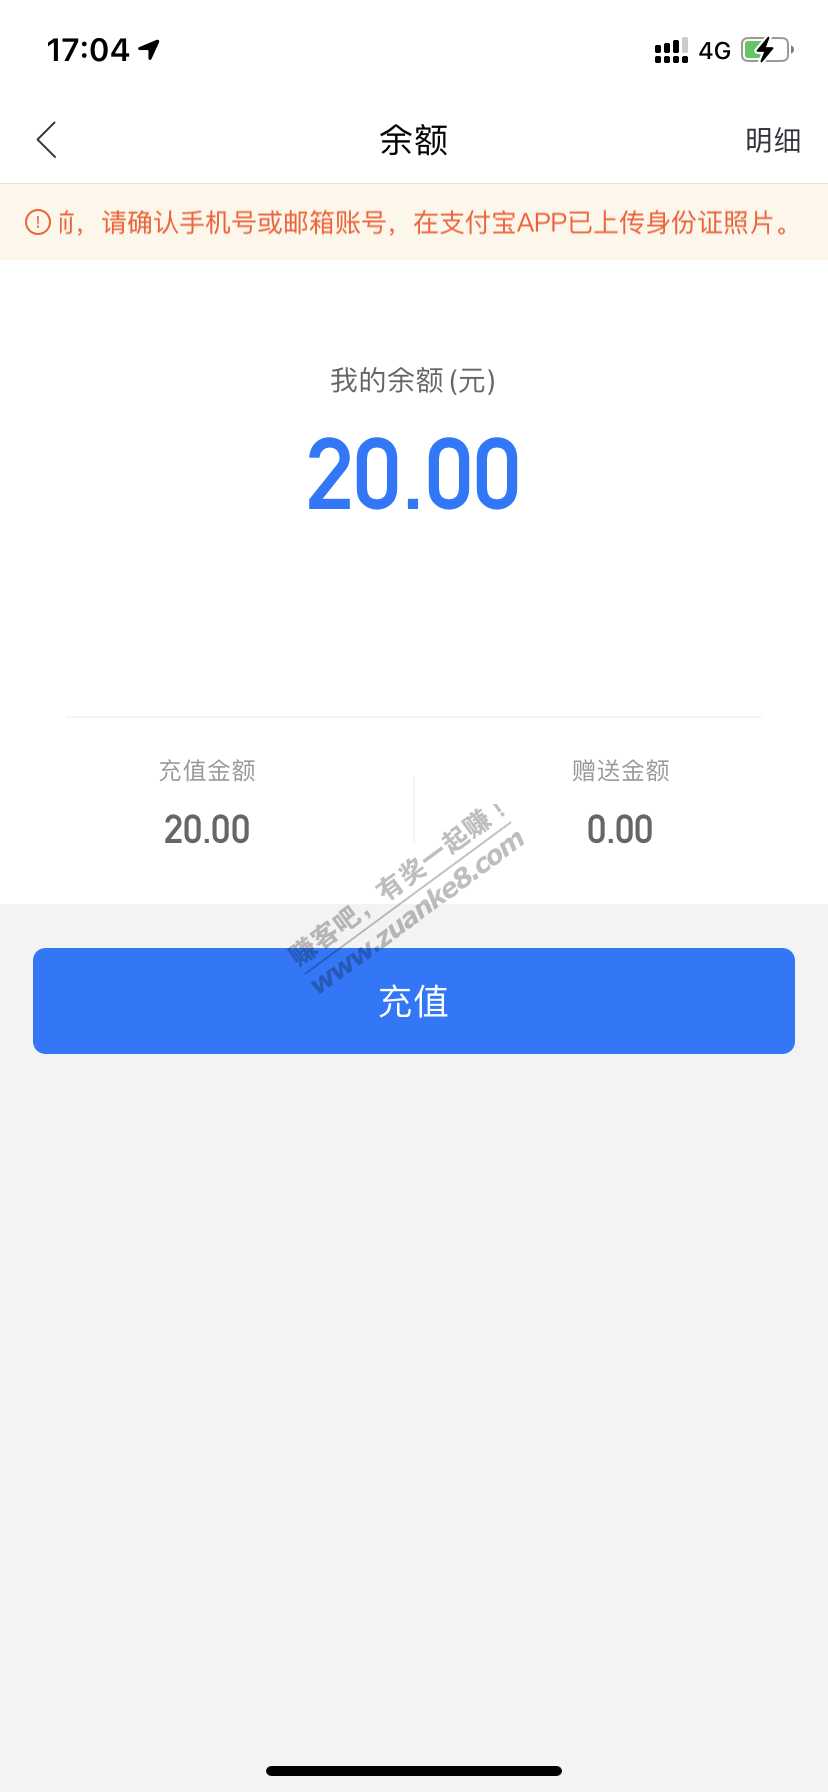 支付宝消费券-充哈罗反买18-惠小助(52huixz.com)